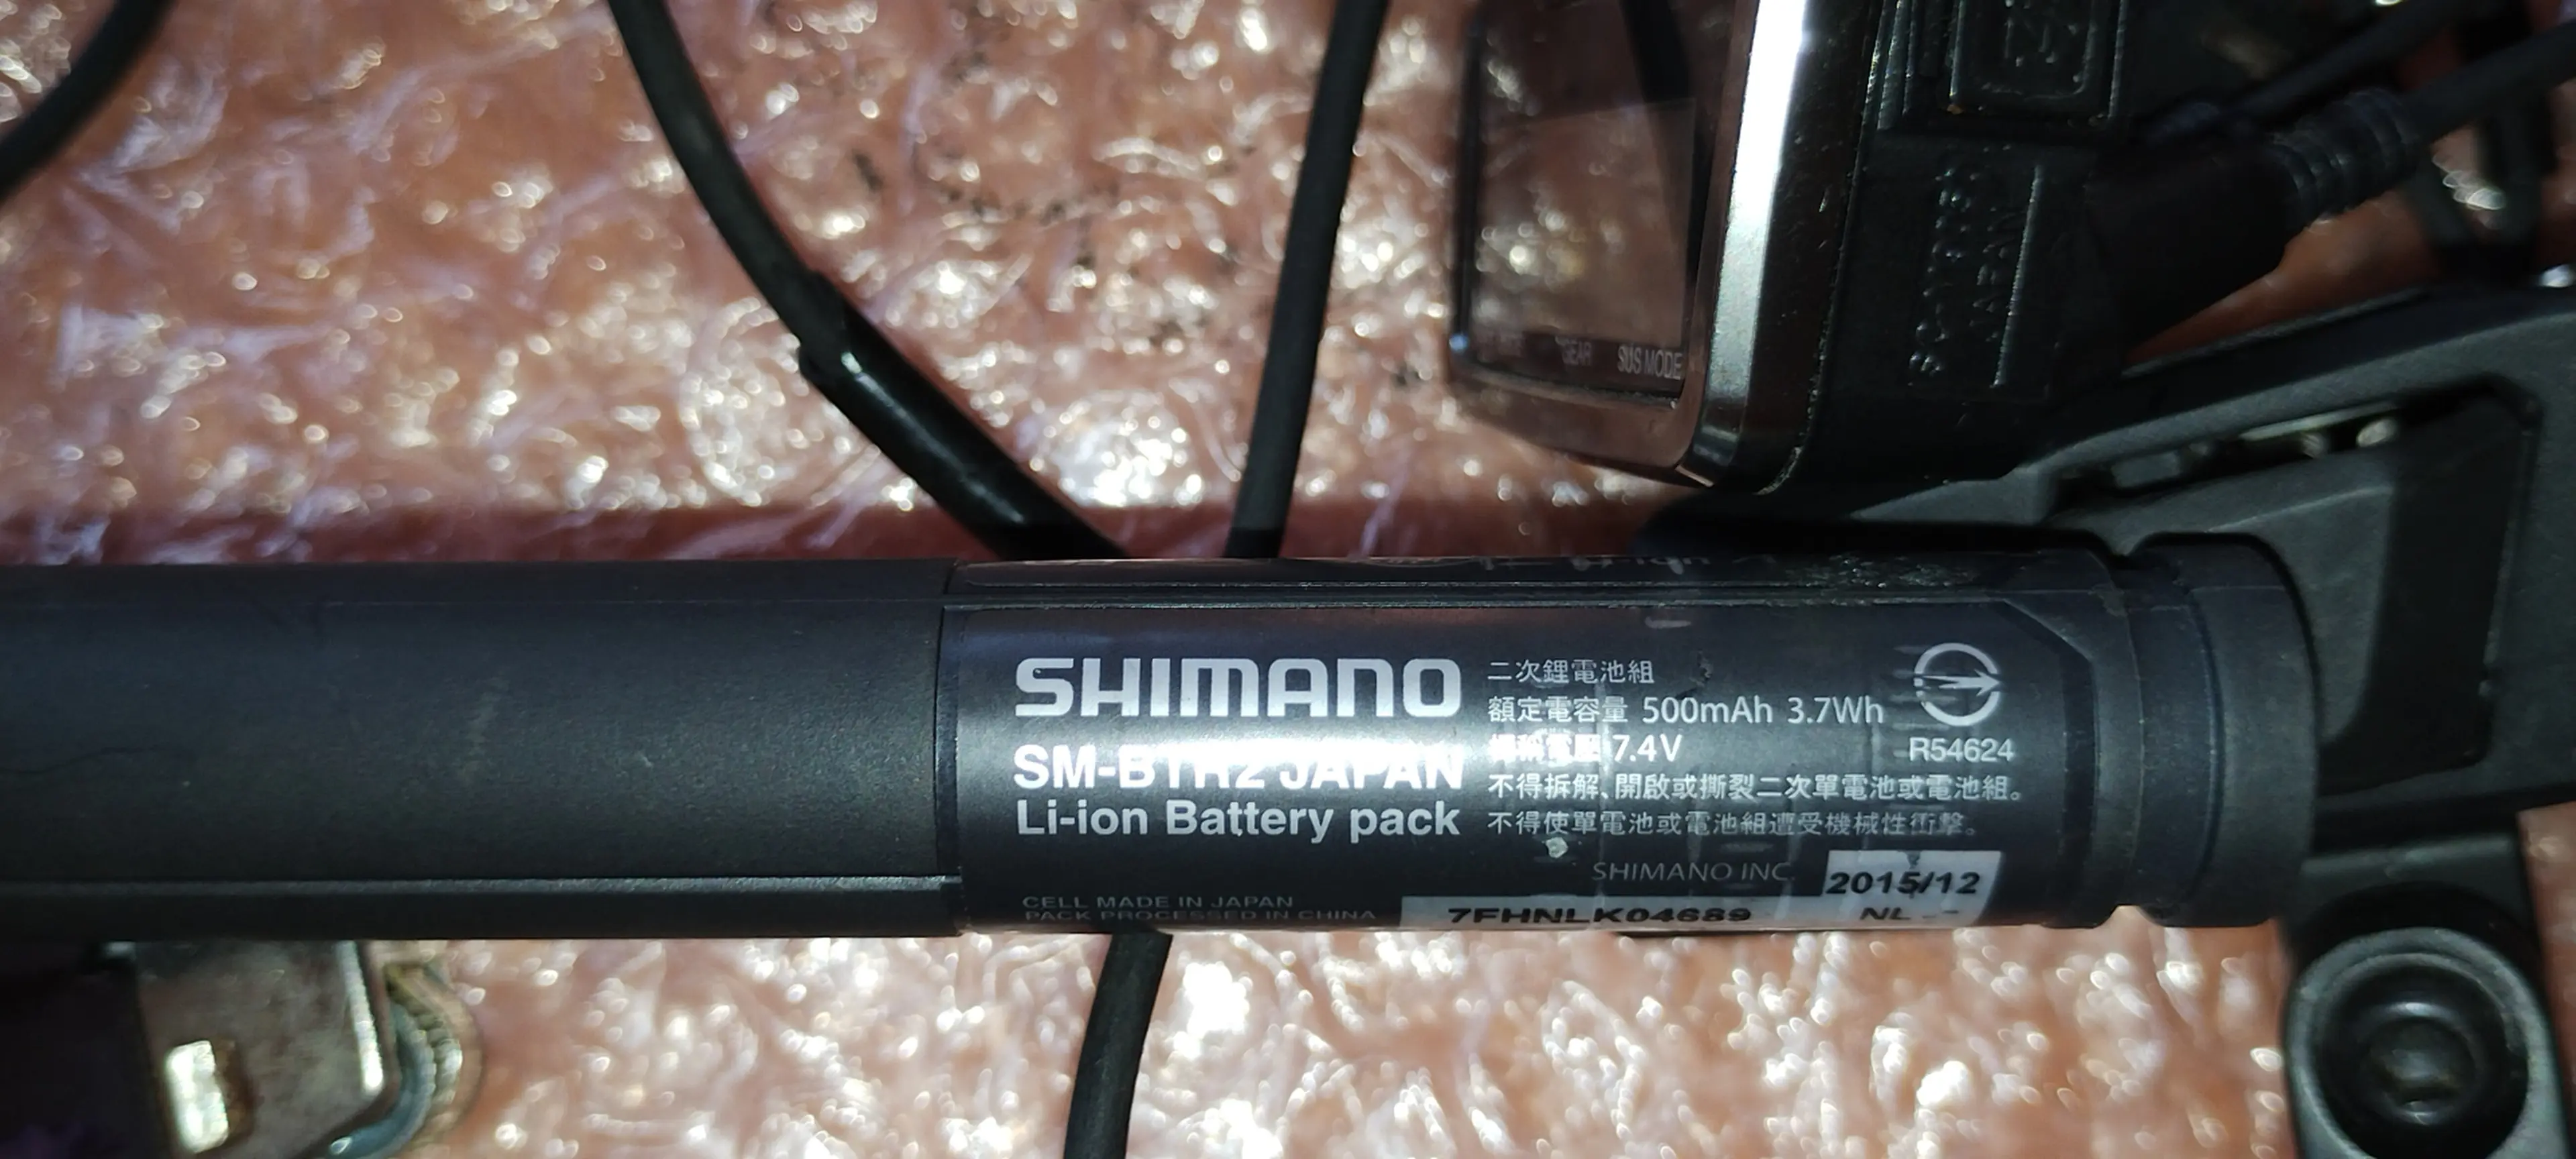 5. Shimano XTR RD-M9050 GS Di2 11 sp.